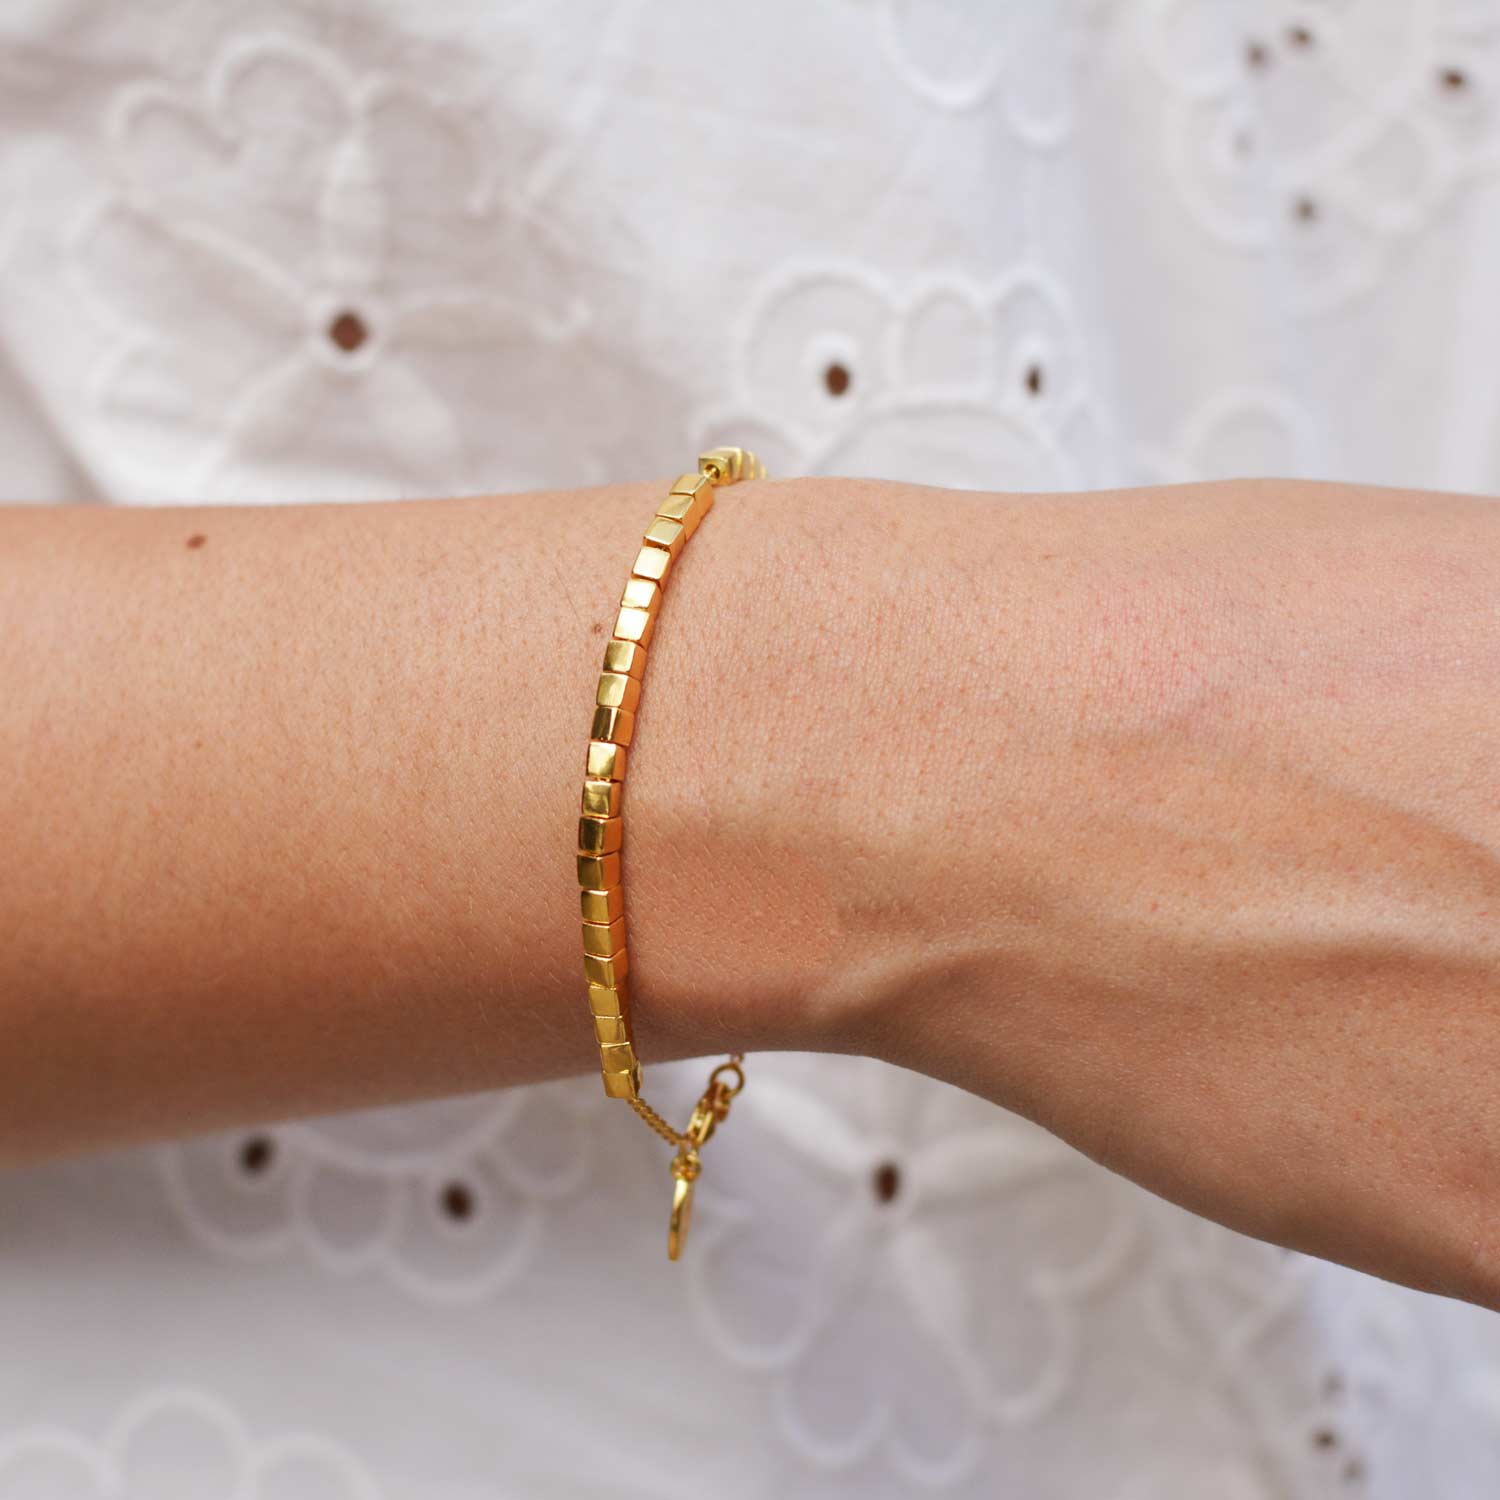 Vishesh jewels 916% Gold Bangle Bracelet, 15 Grams at Rs 65000 in New Delhi